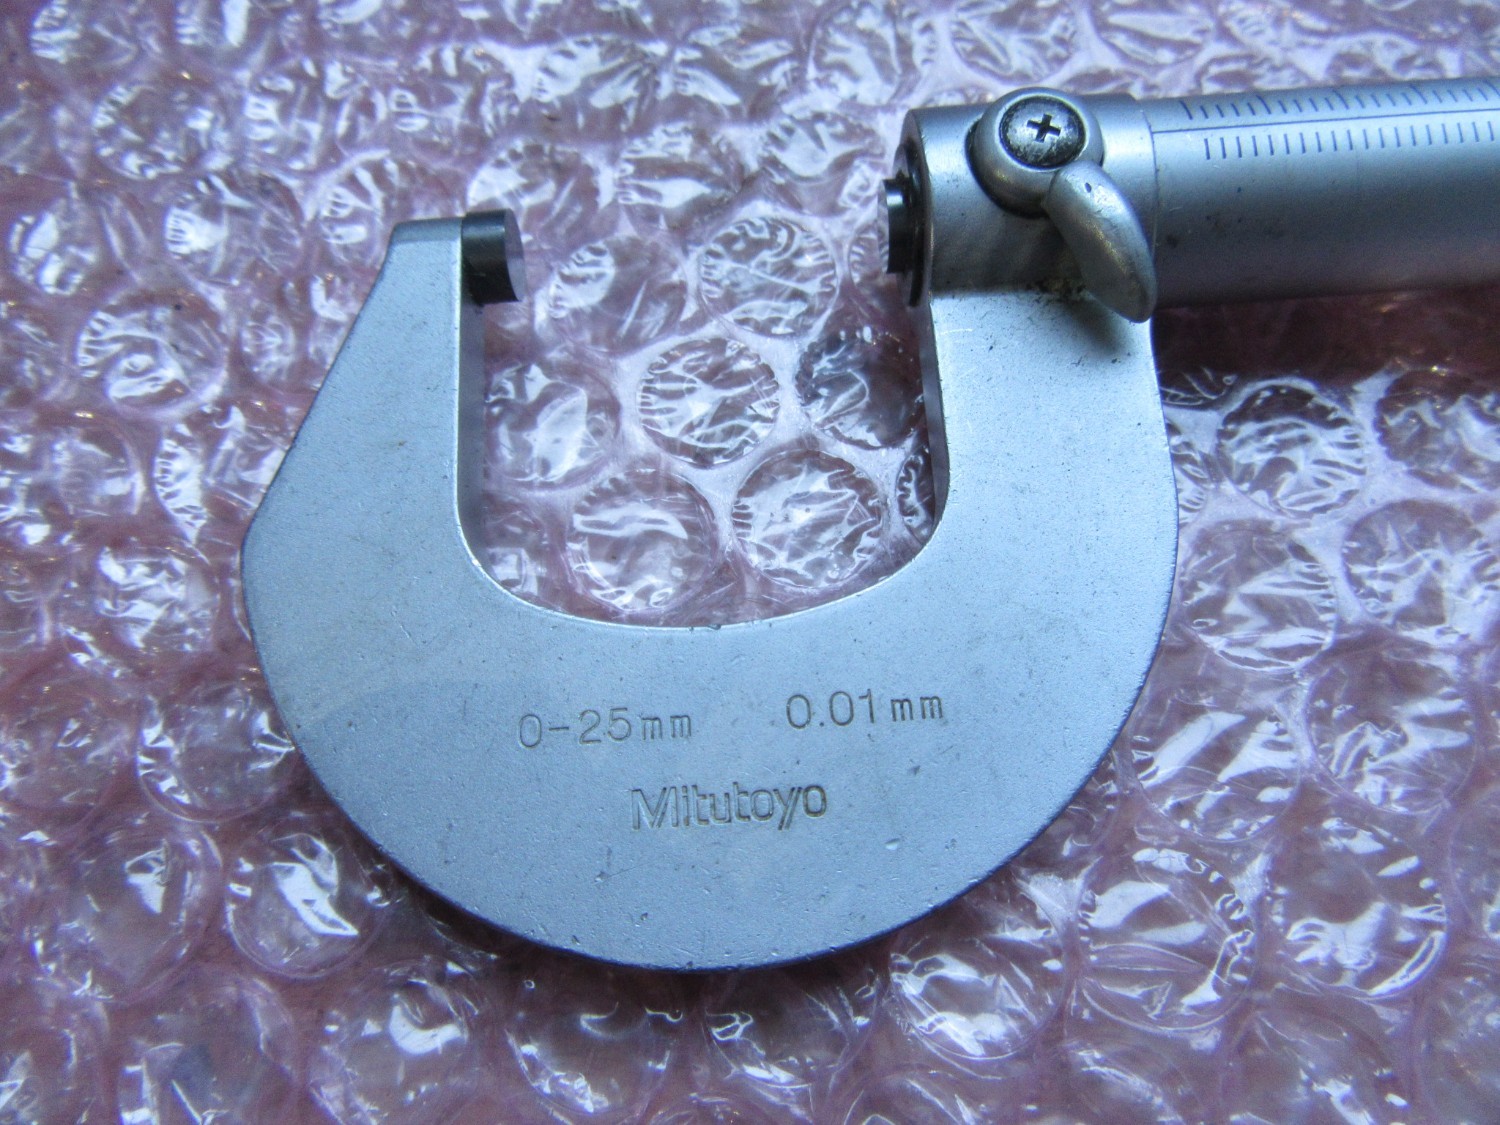 中古Outside micrometer 【外側マイクロメーター】測定範囲:0-25mm 目量:0.01mm Mitutoyo